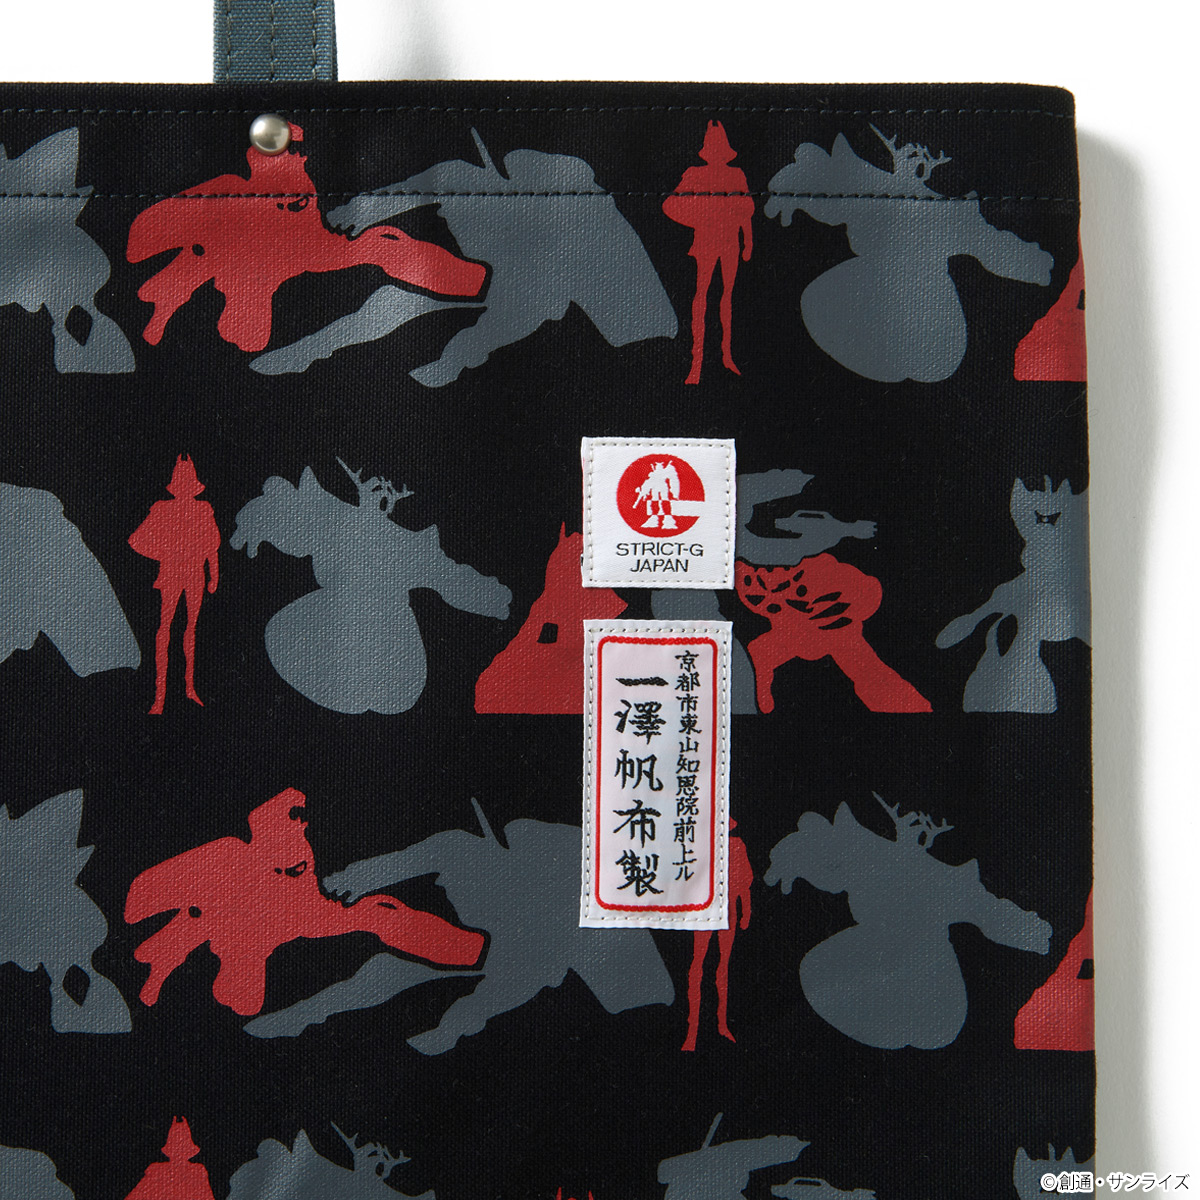 11,298円STRICT-G JAPAN  一澤帆布 機動戦士ガンダムトートバッグ 赤い彗星